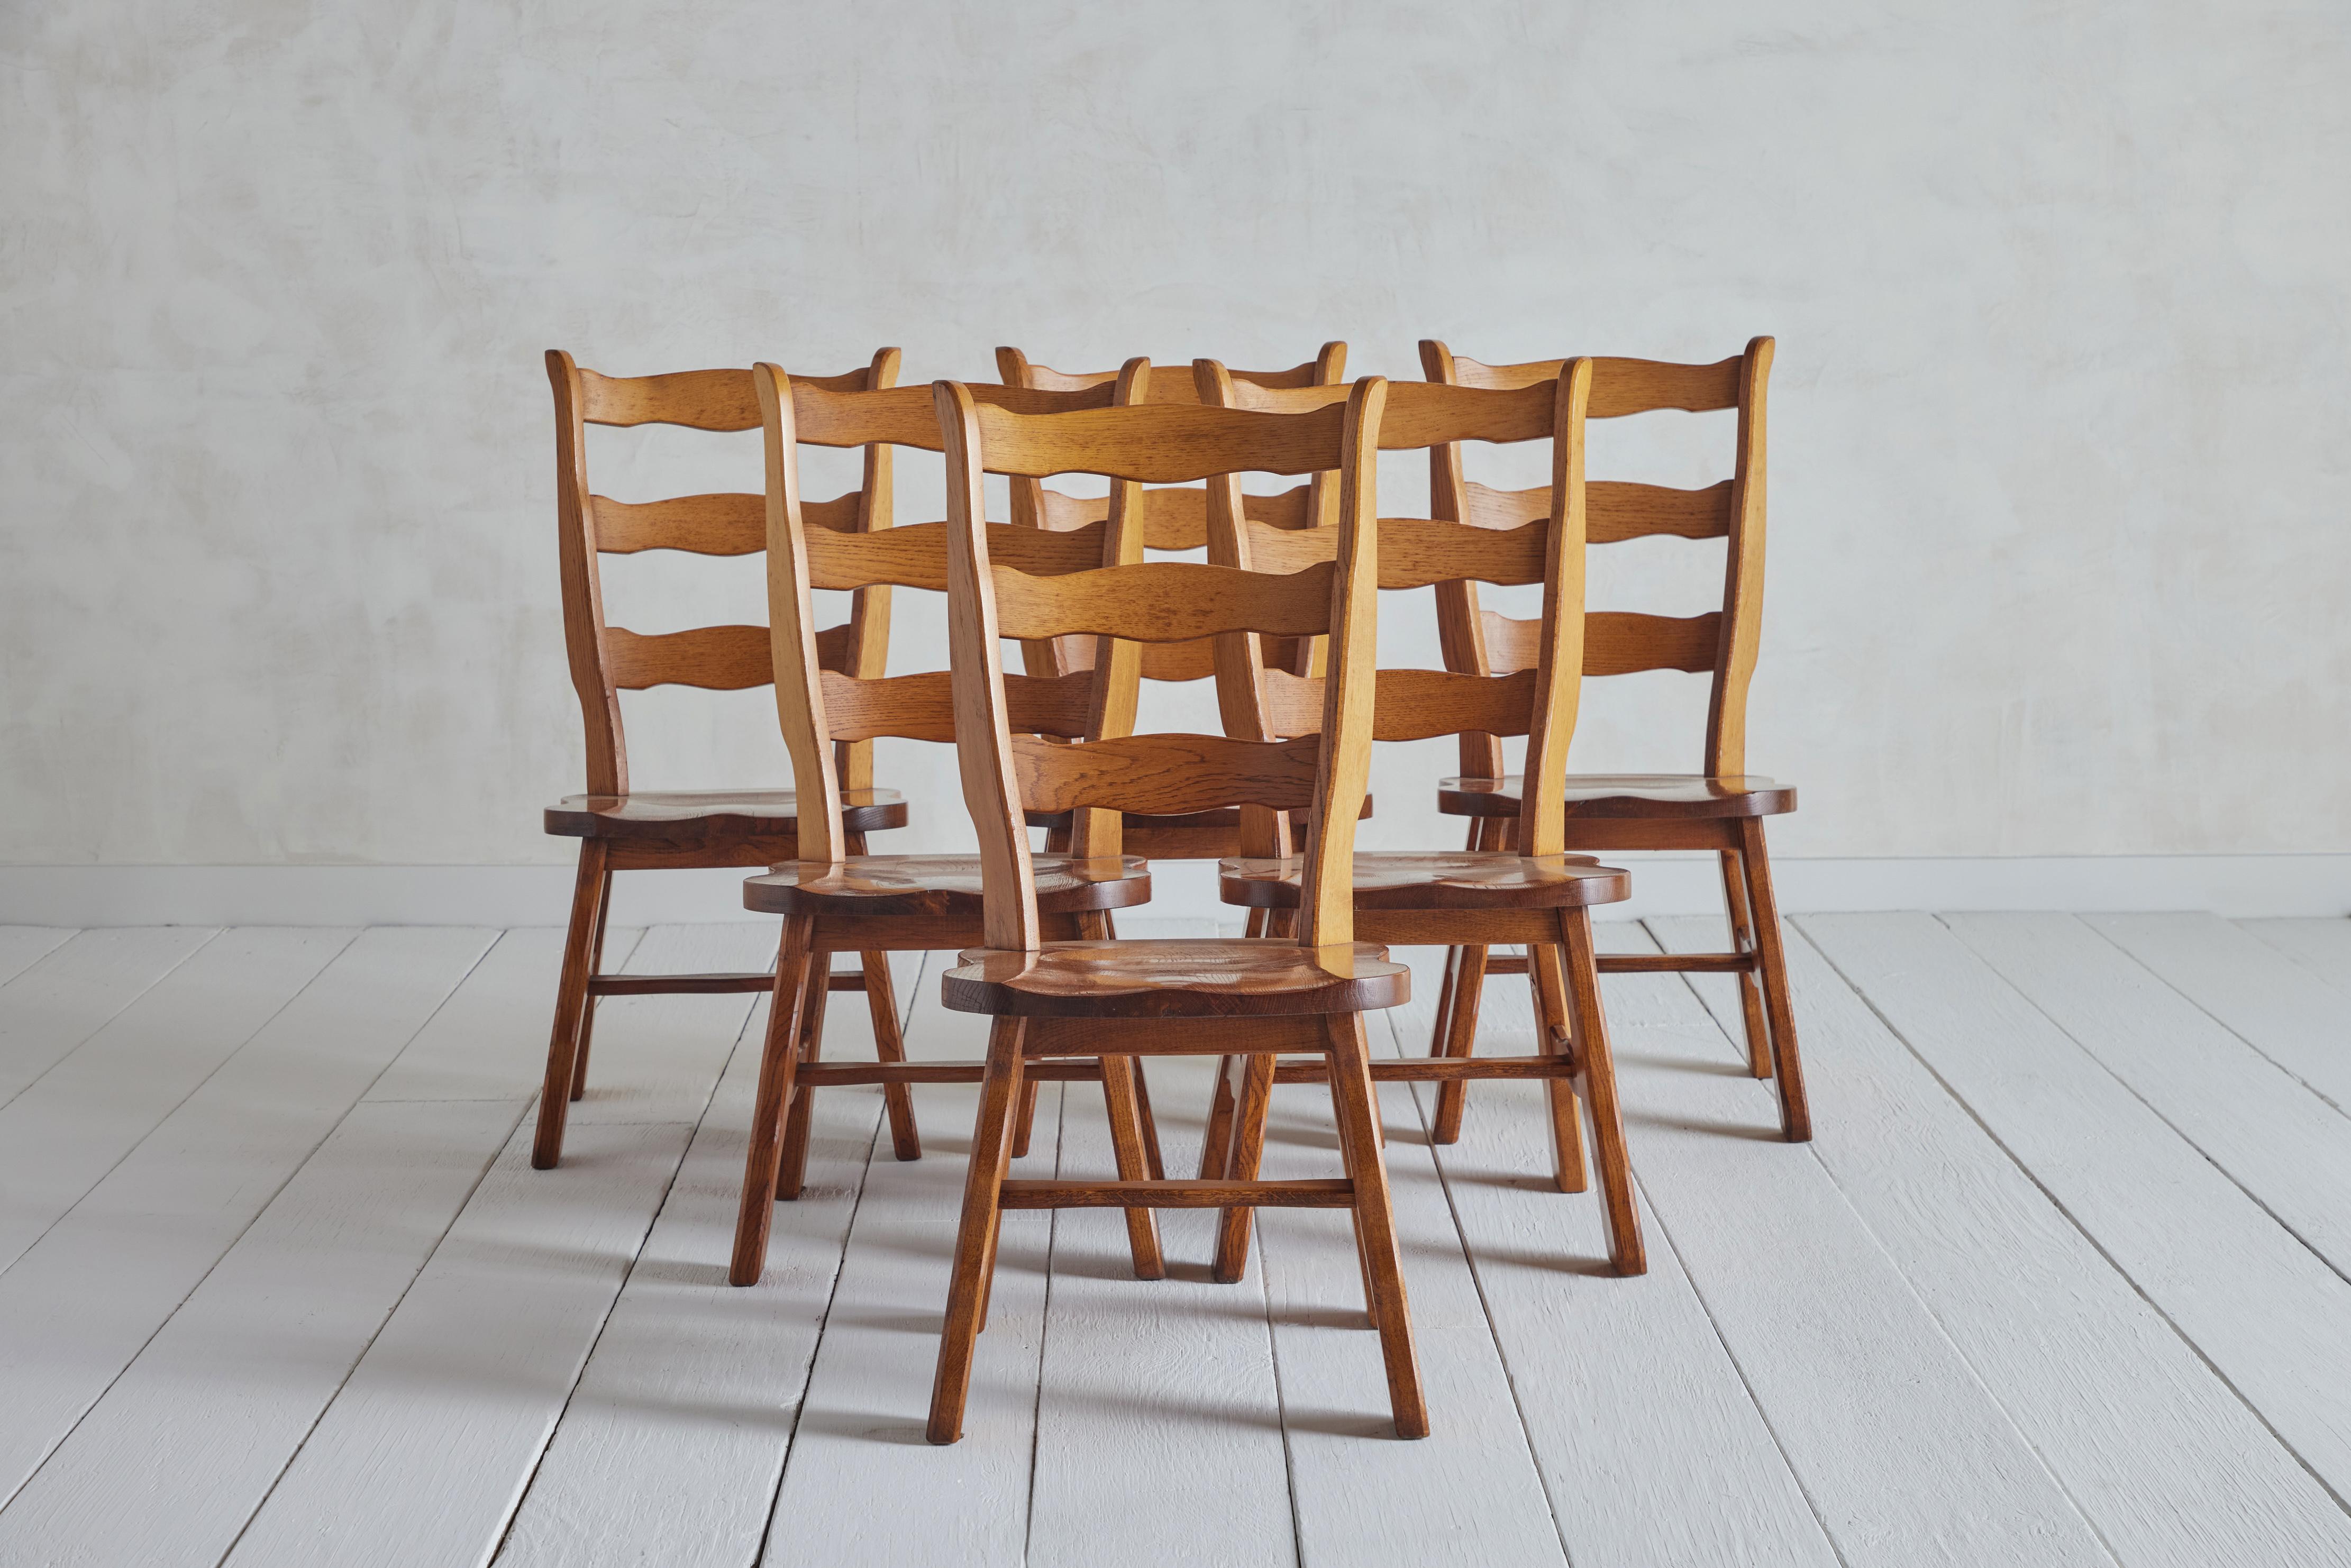 Ensemble de six chaises Brutalist à dossier en échelle, Belgique, circa 1960. Fabriqué en chêne massif. L'usure du bois et de la finition correspond à l'âge et à l'utilisation. 